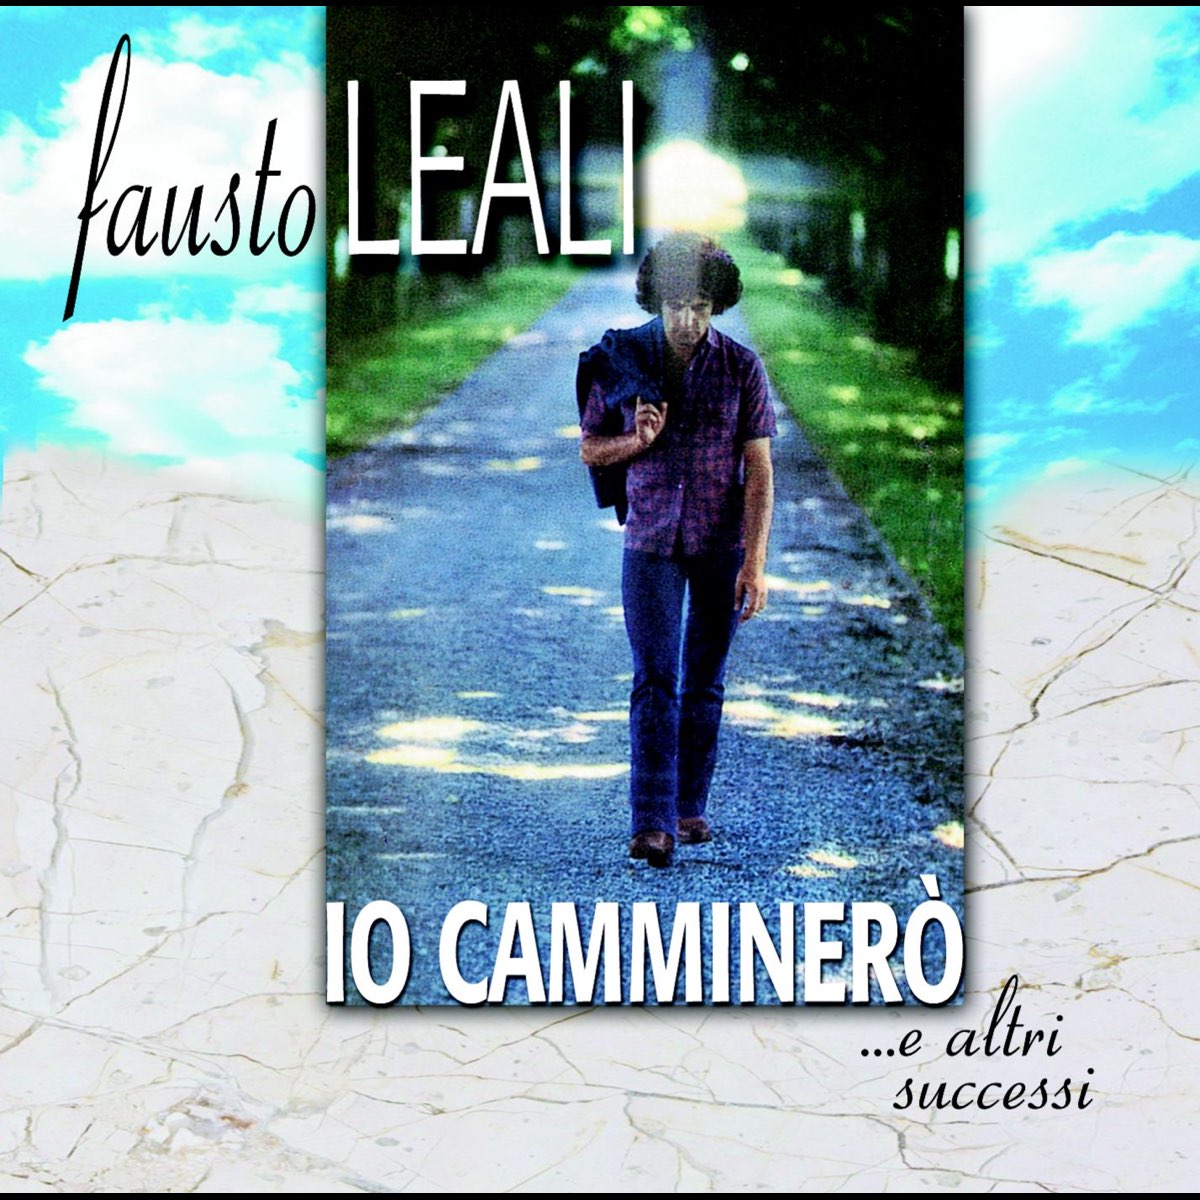 Io Camminerò...e Altri Successi - Album by Fausto Leali - Apple Music